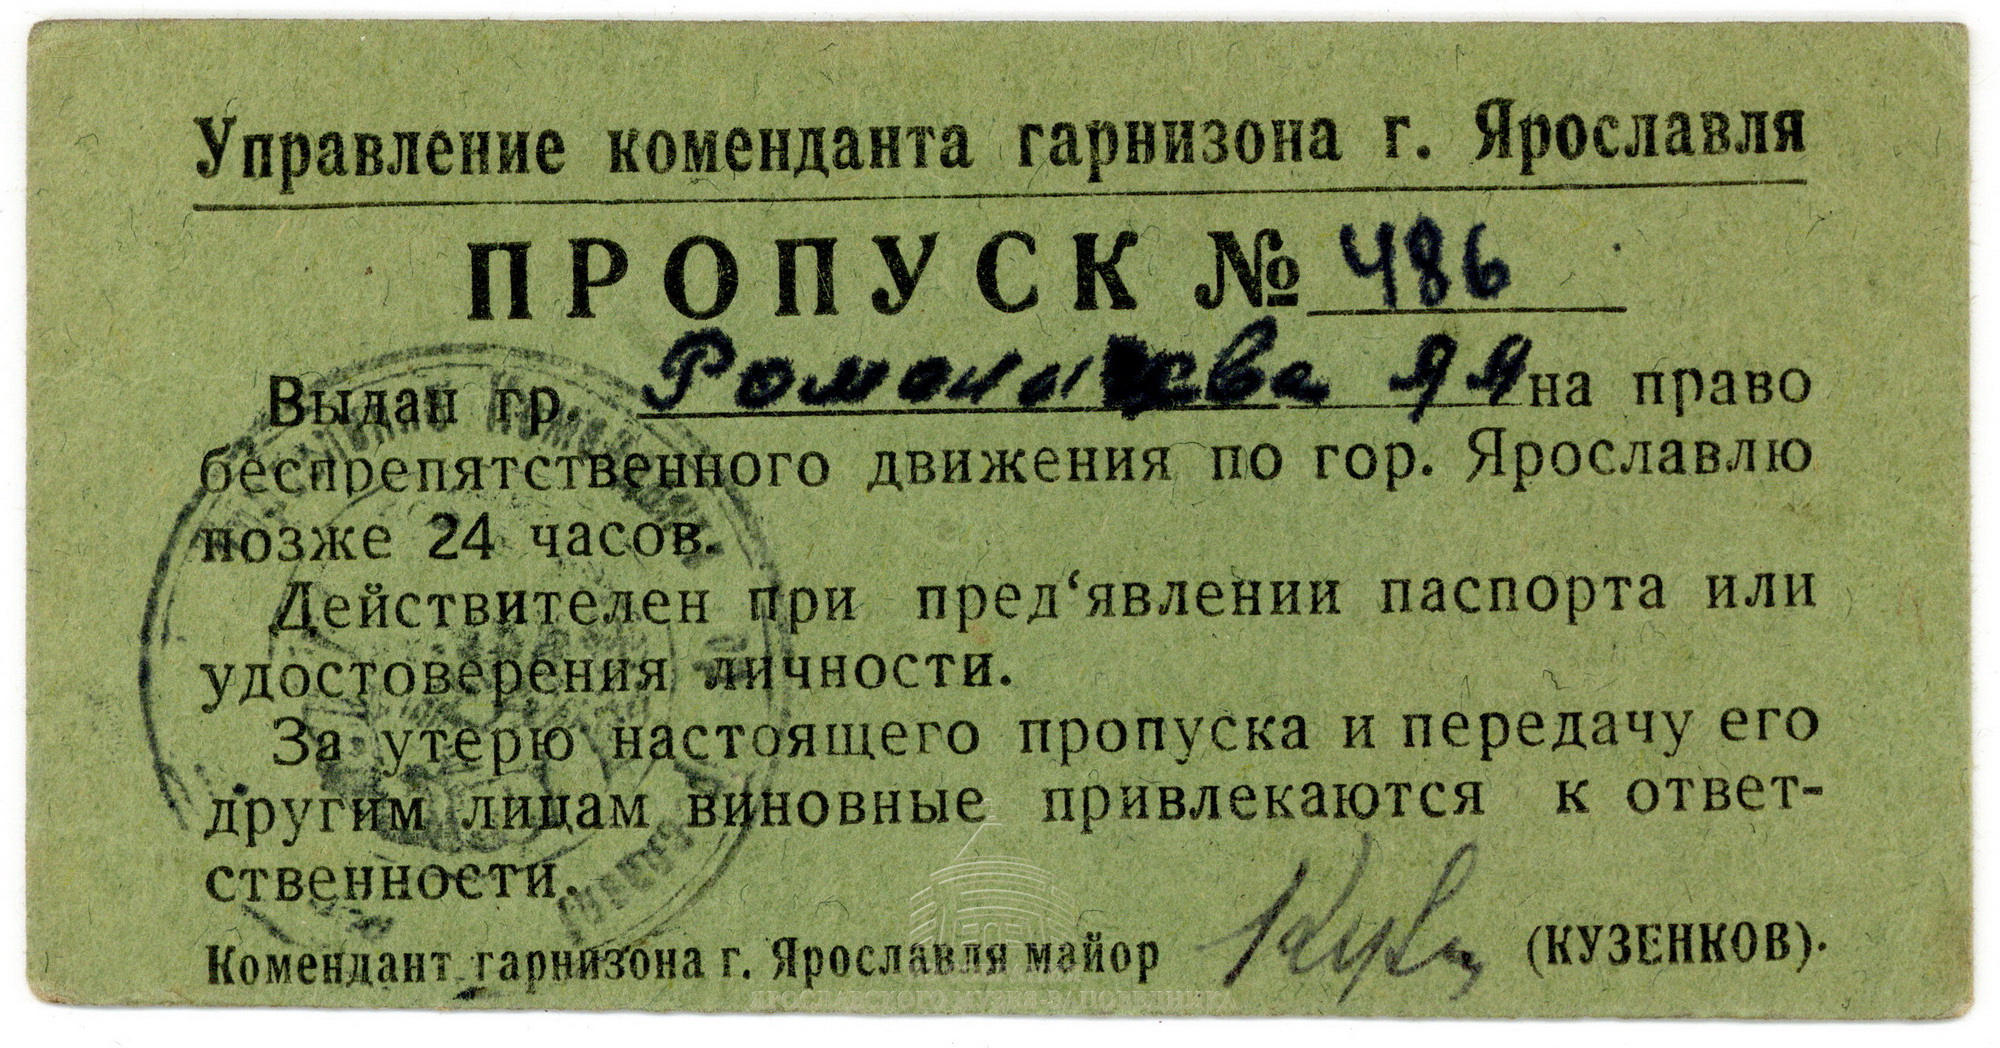 Пропуск № 486 на право беспрепятственного движения по г. Ярославлю позднее 24 часов на имя А. А. Романичевой. 1941-1945 гг.